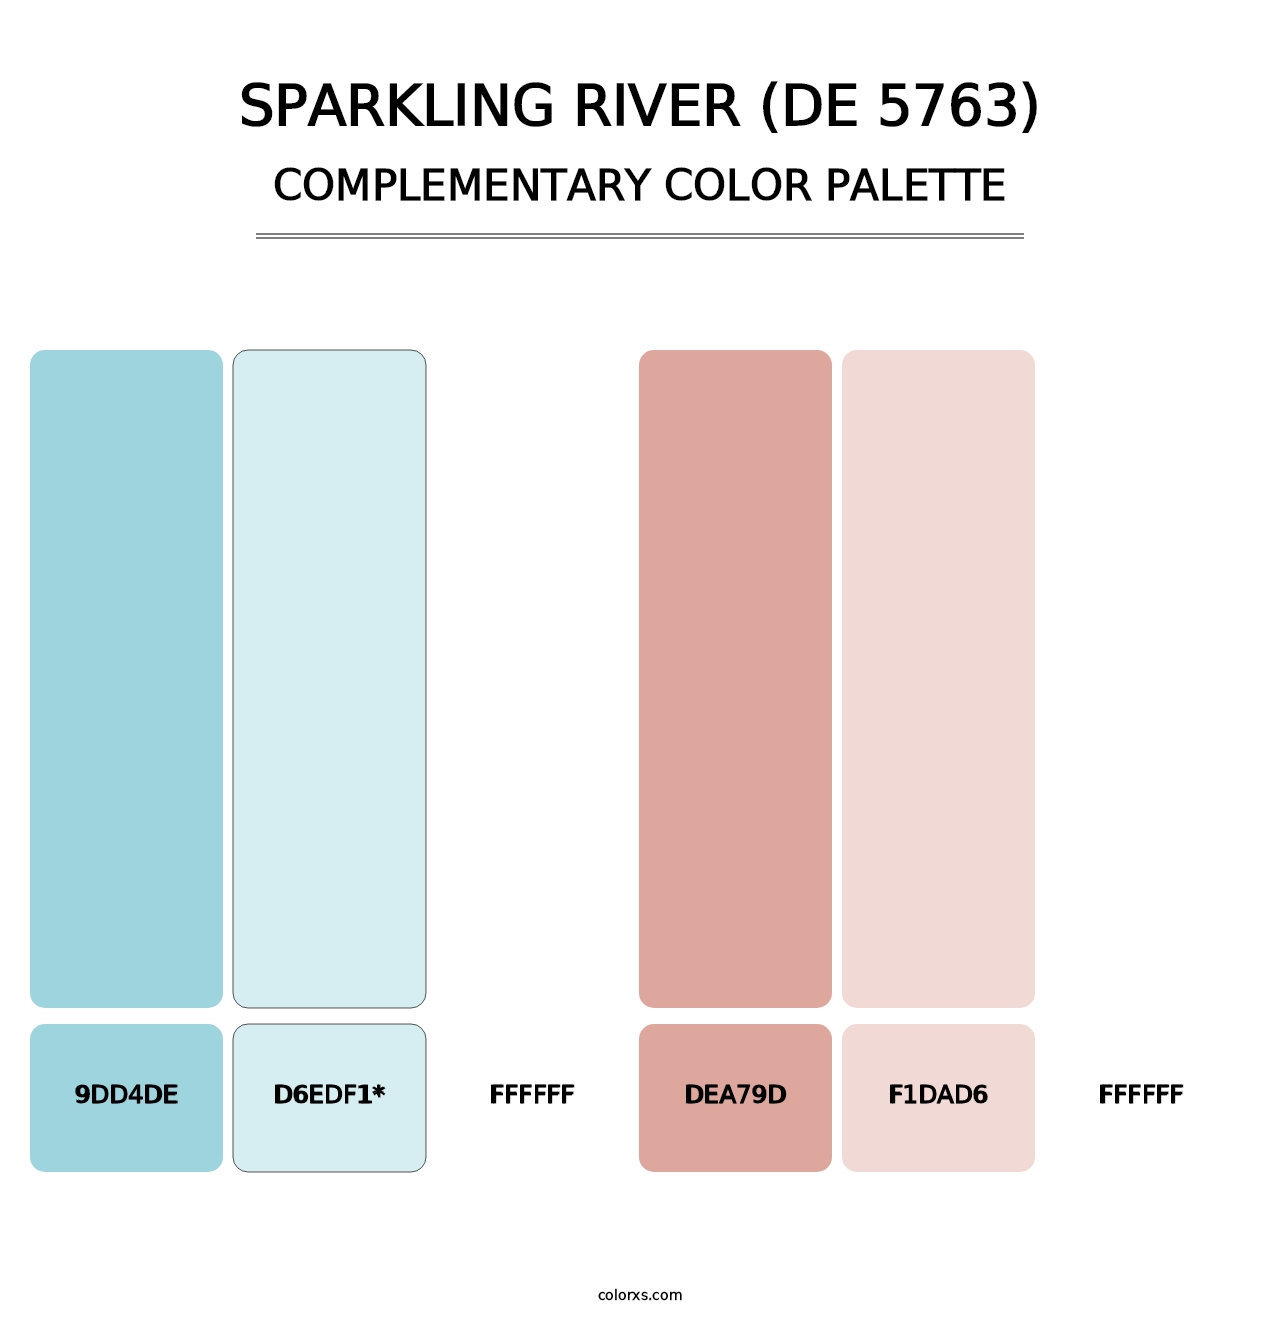 Sparkling River (DE 5763) - Complementary Color Palette